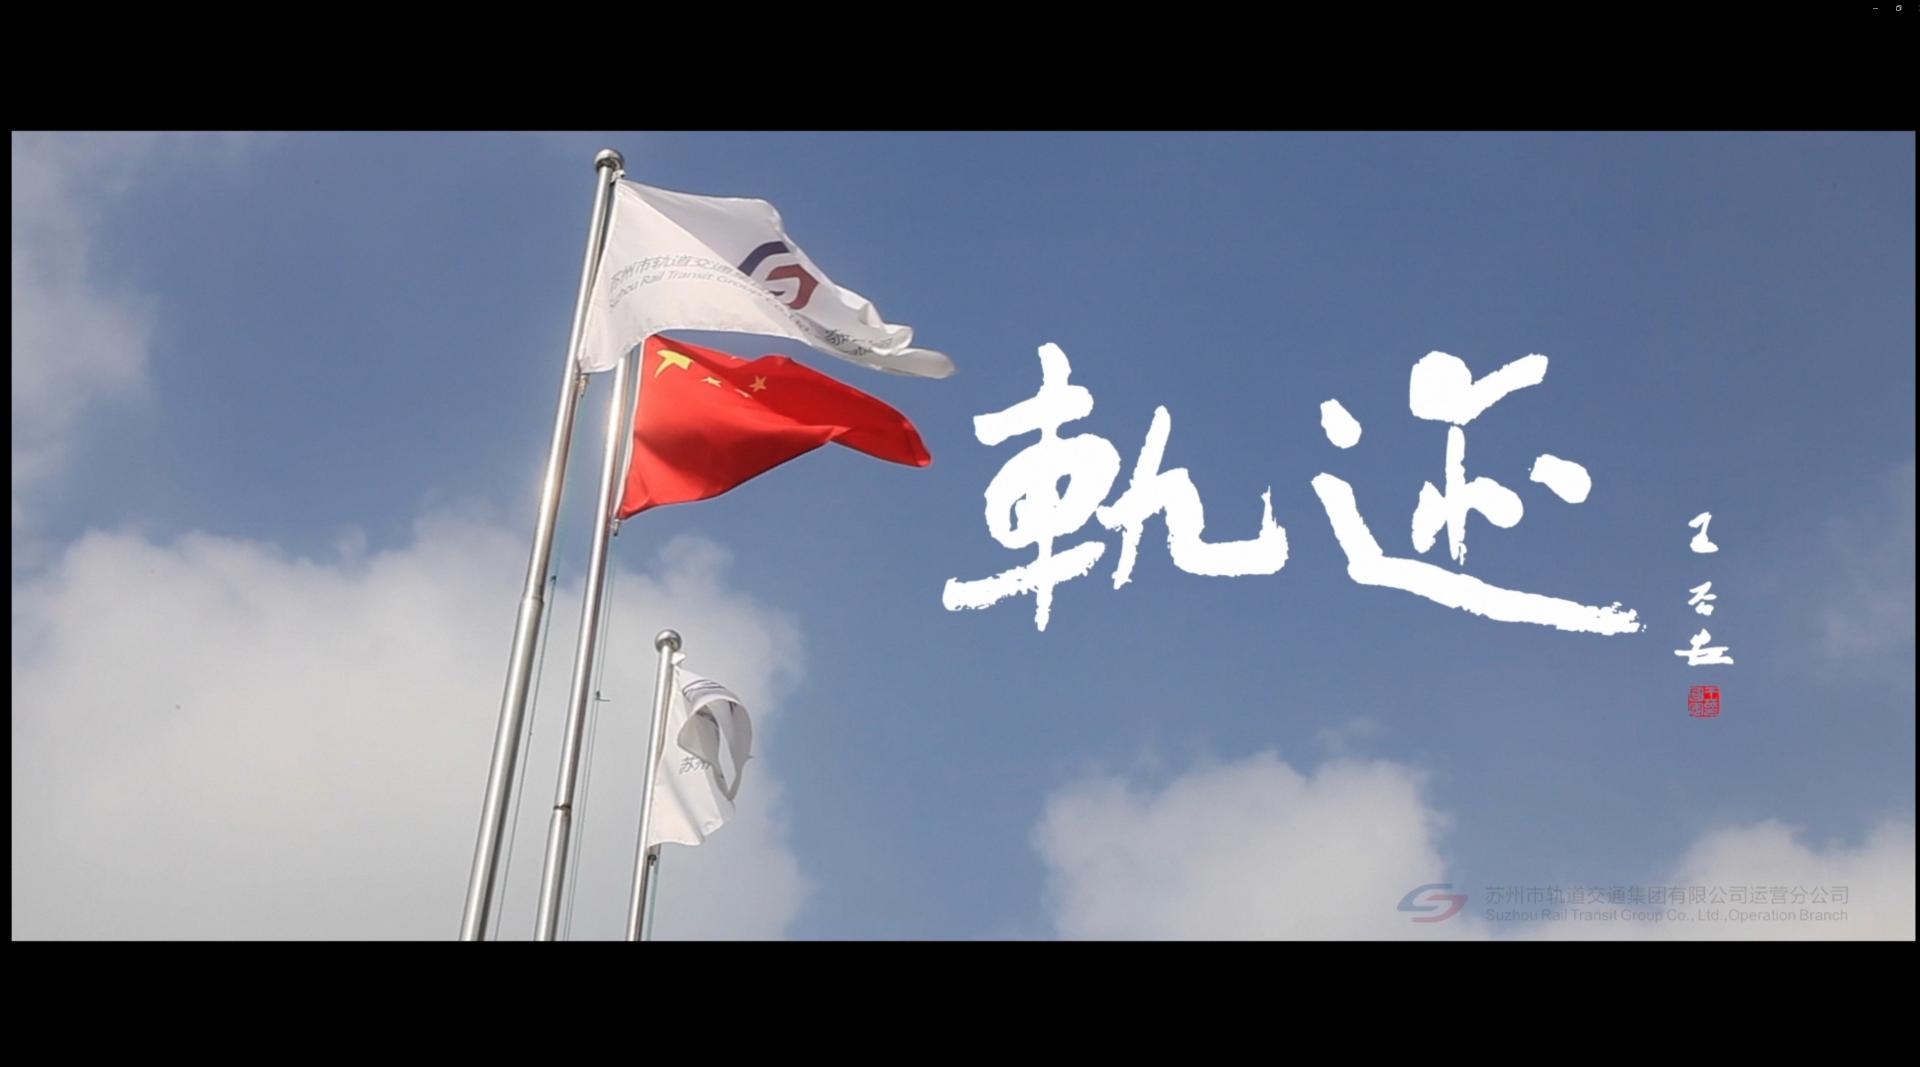 《轨迹》苏州轨道交通宣传片